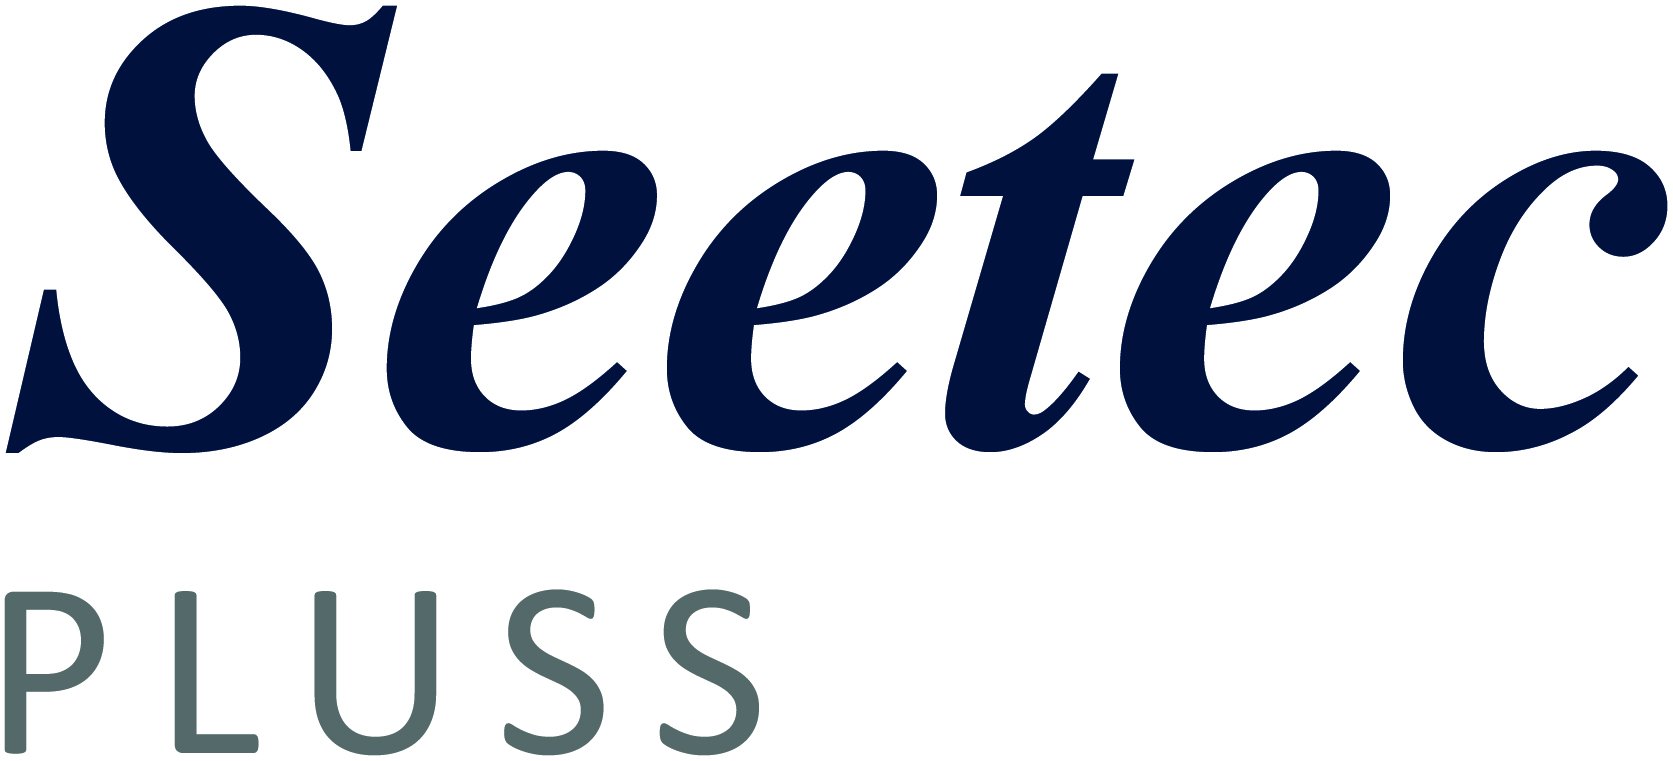 Cornwall Seetec logo